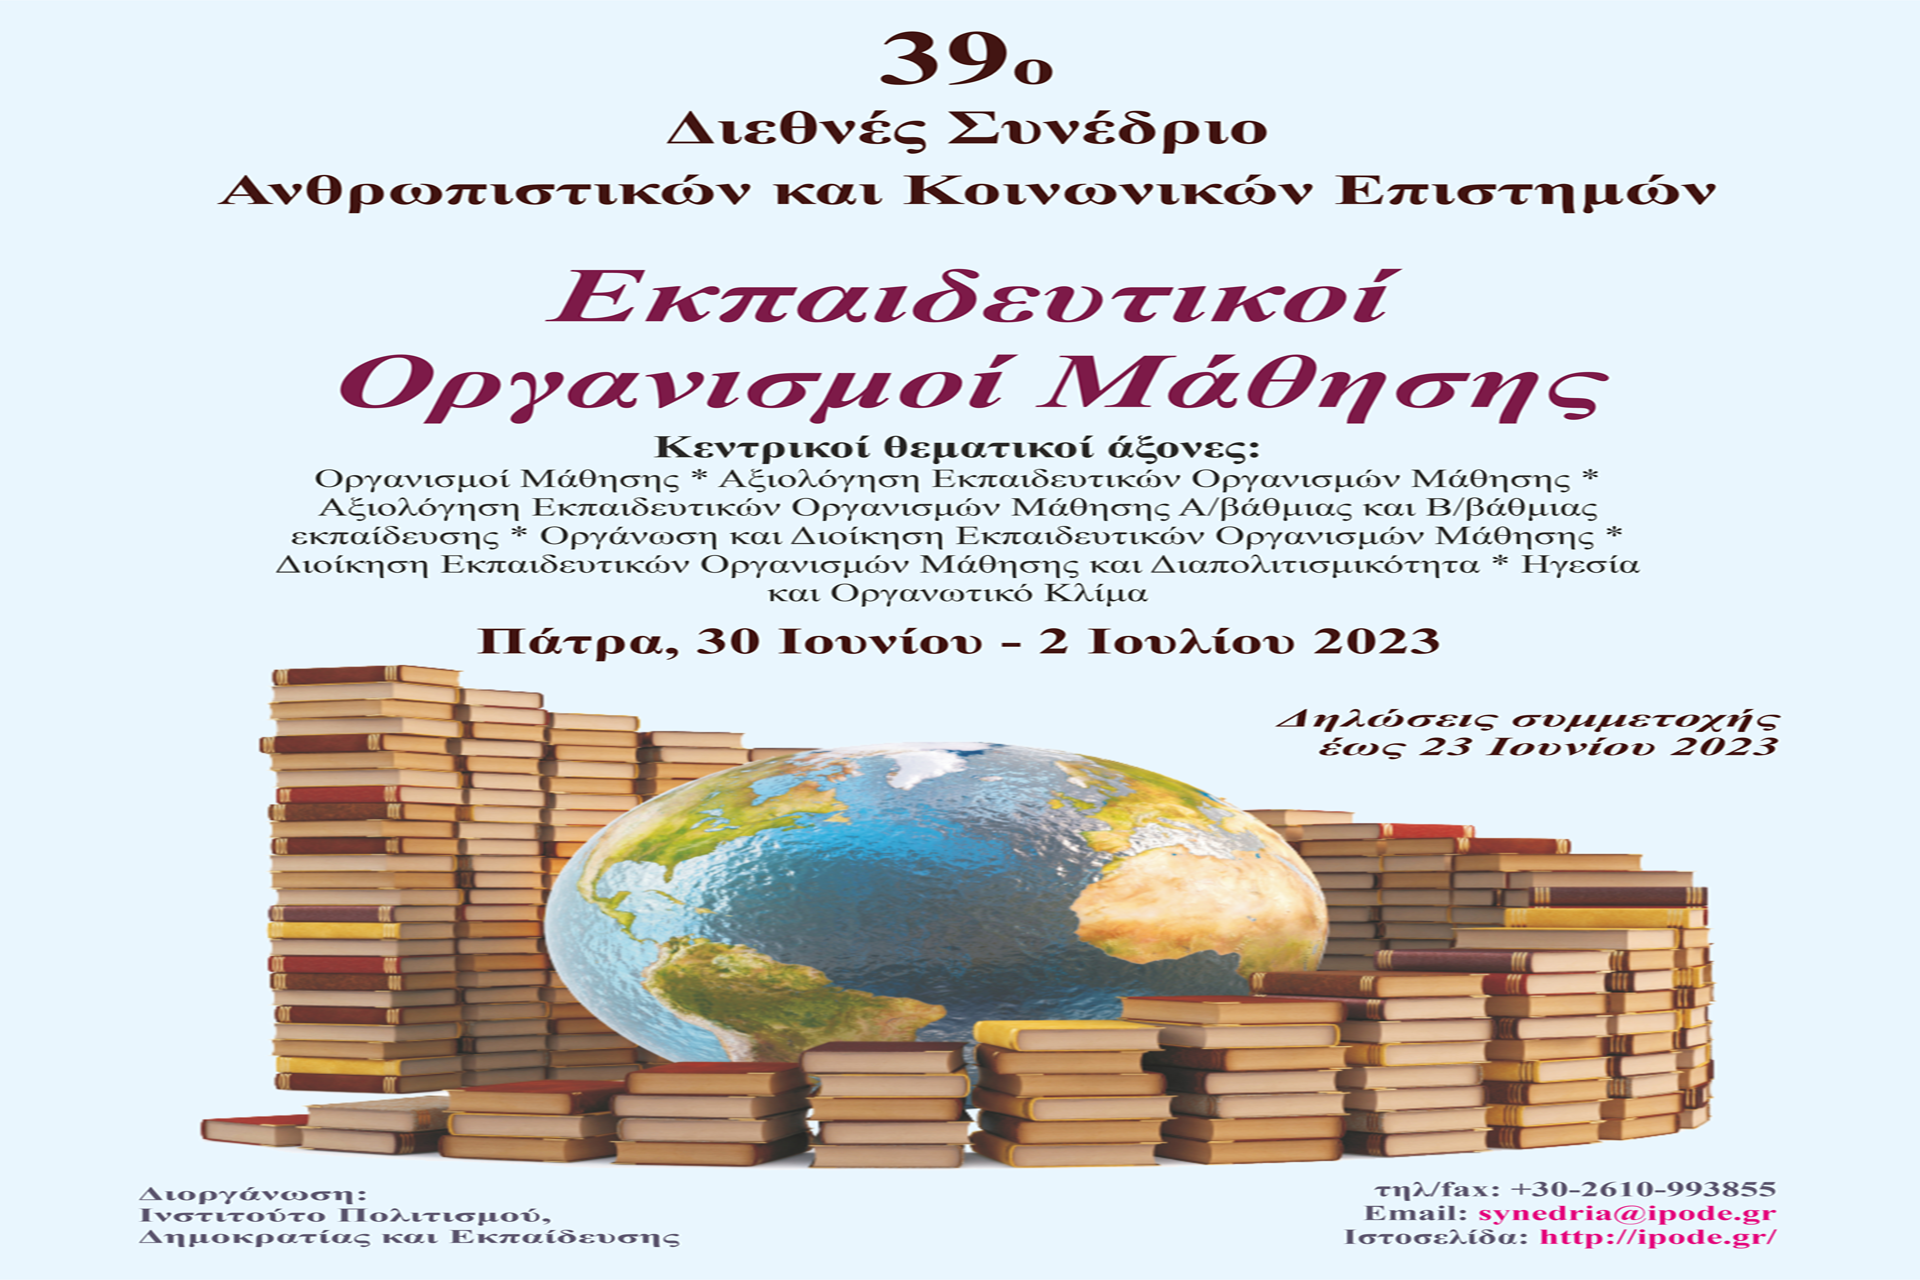 39ο Διεθνές Συνέδριο με θέμα «Εκπαιδευτικοί οργανισμοί μάθησης»